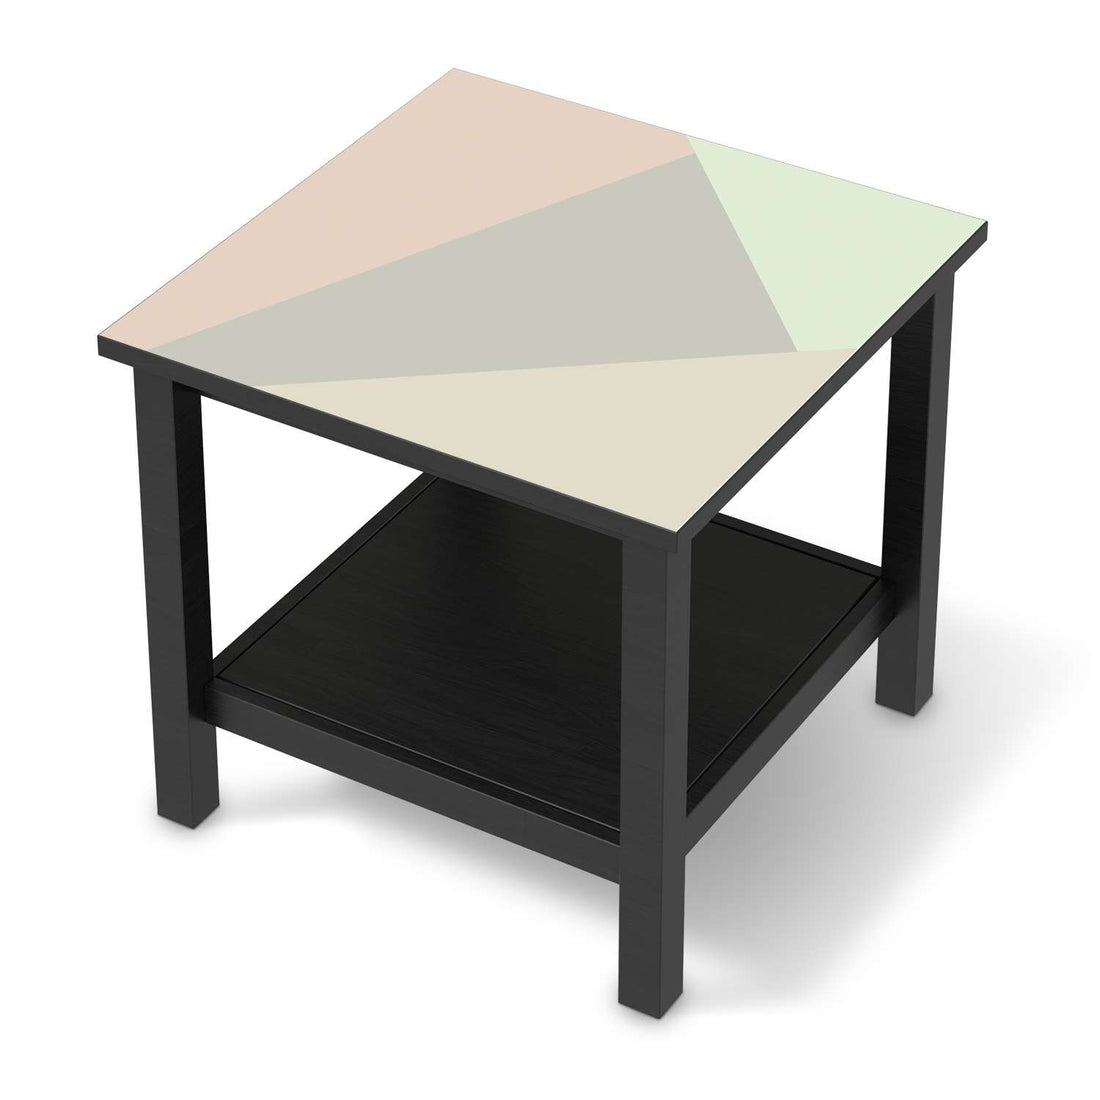 Möbel Klebefolie Pastell Geometrik - IKEA Hemnes Beistelltisch 55x55 cm - schwarz